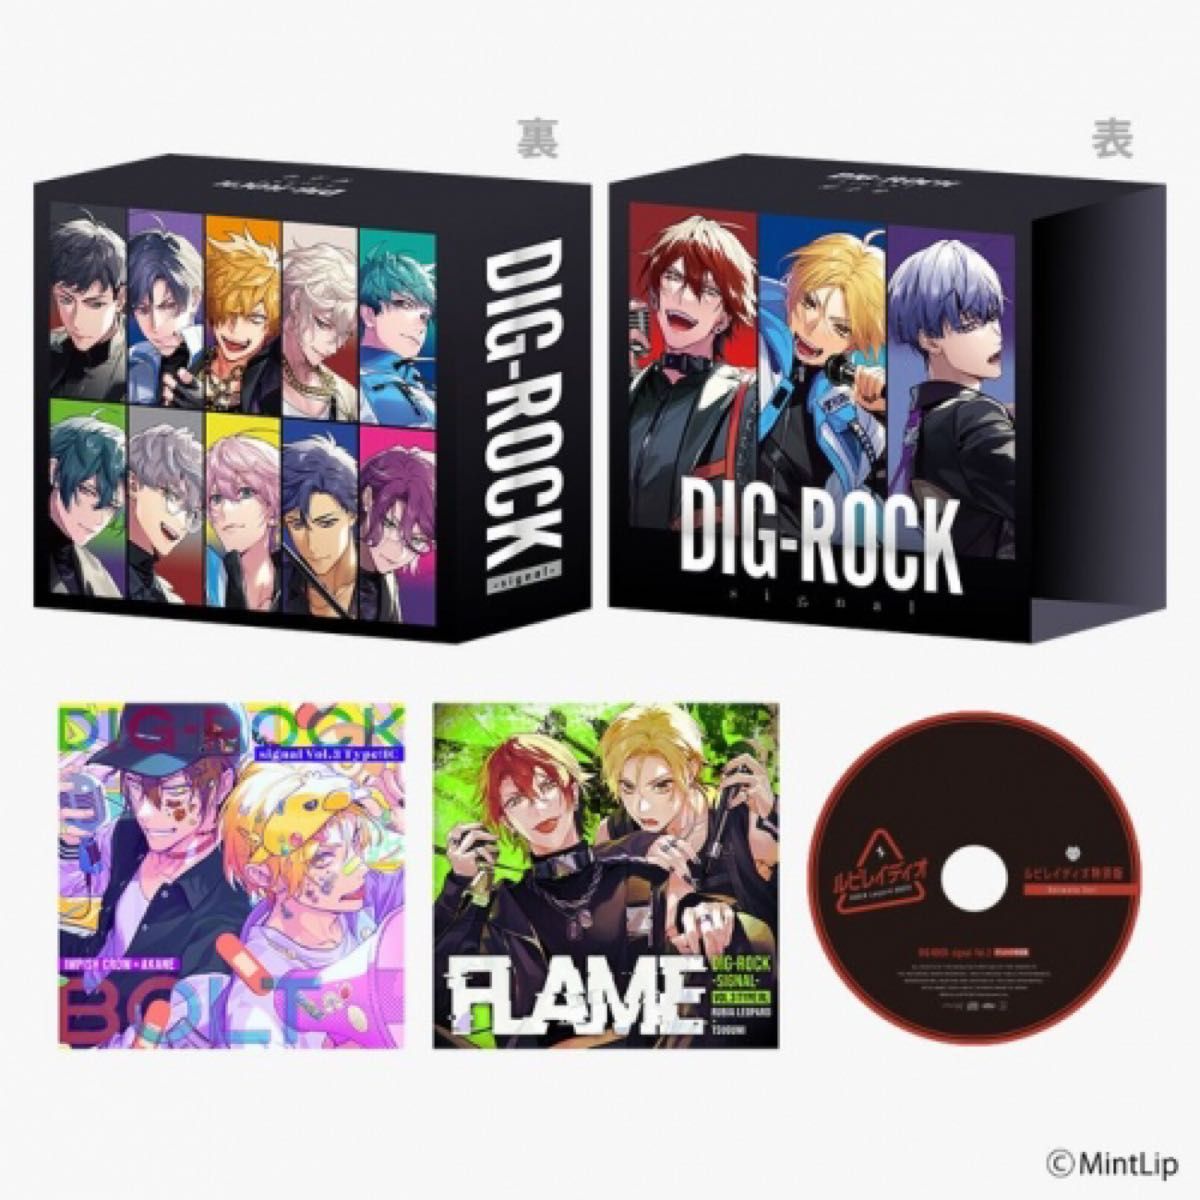 DIG-ROCK -signal- Vol.3 アニメイト限定盤 ディグロ ディグロック ルビレイディオ特別版付き 収納BOX付き